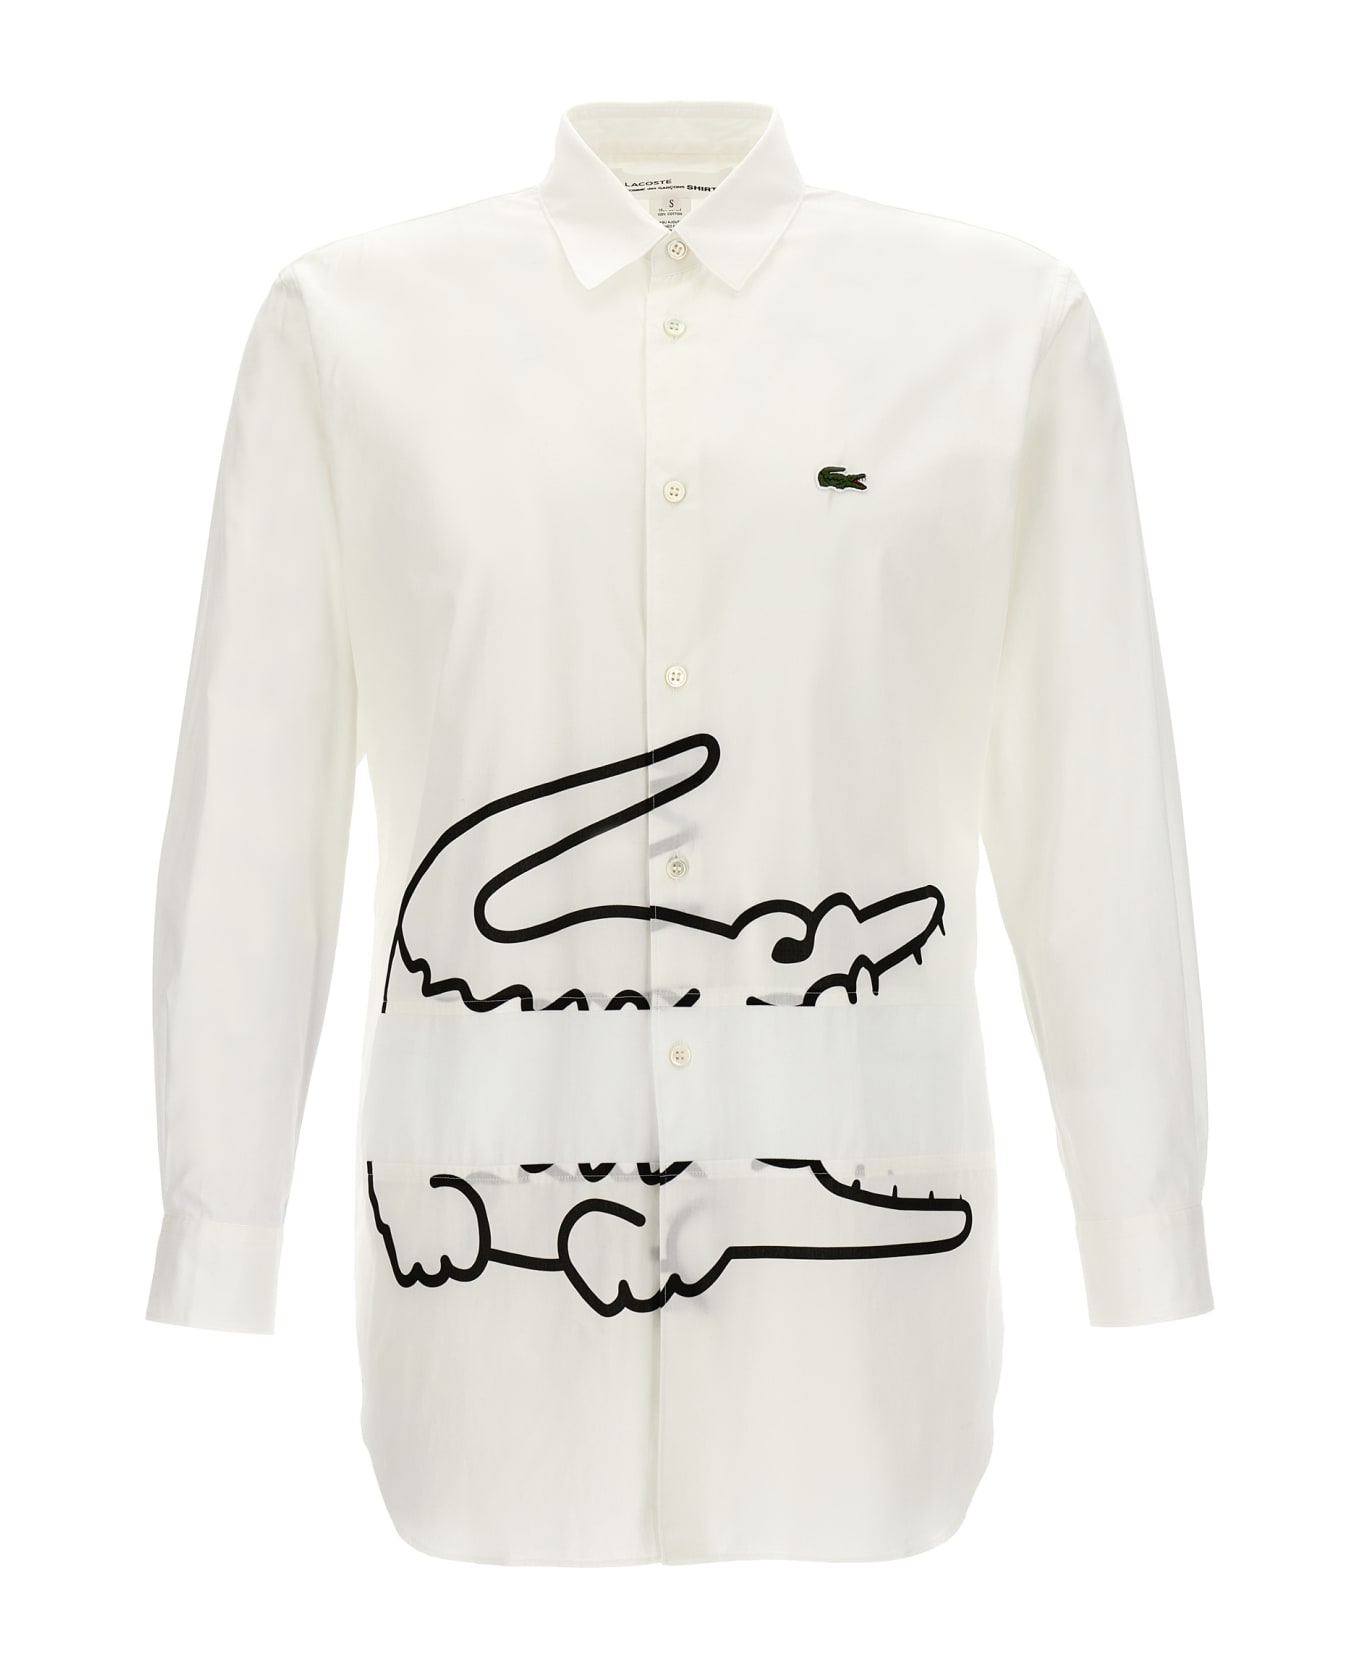 Comme des Garçons Shirt X Lacoste Shirt - White/Black